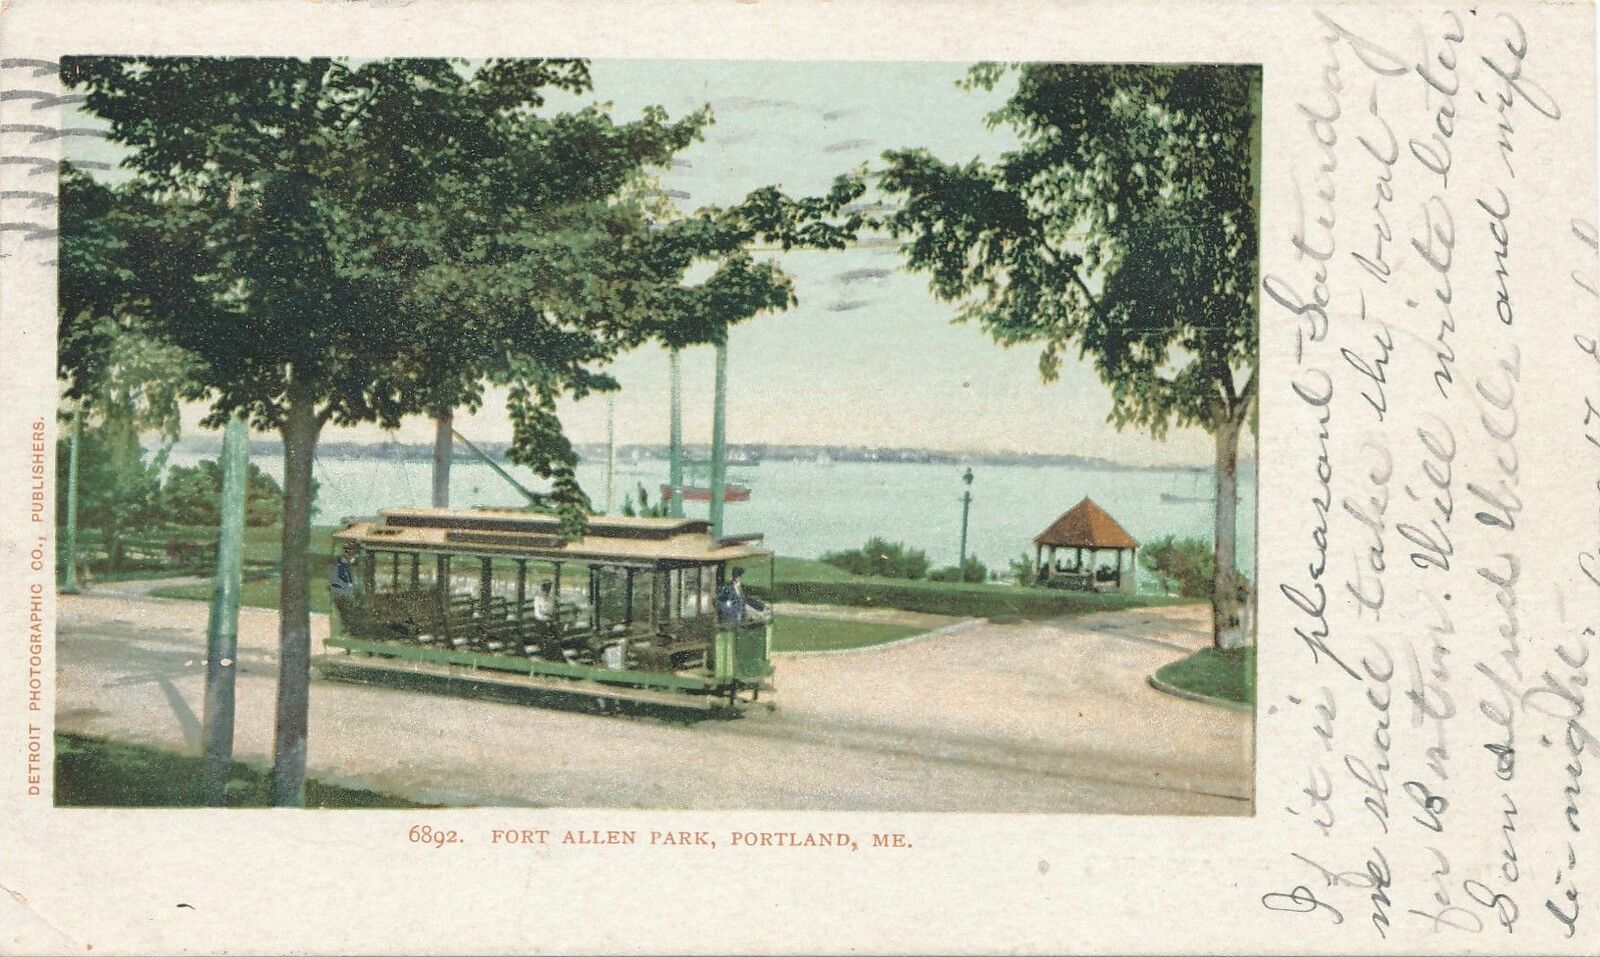 PORTLAND ME - Fort Allen Park showing Street Car - udb - 1905